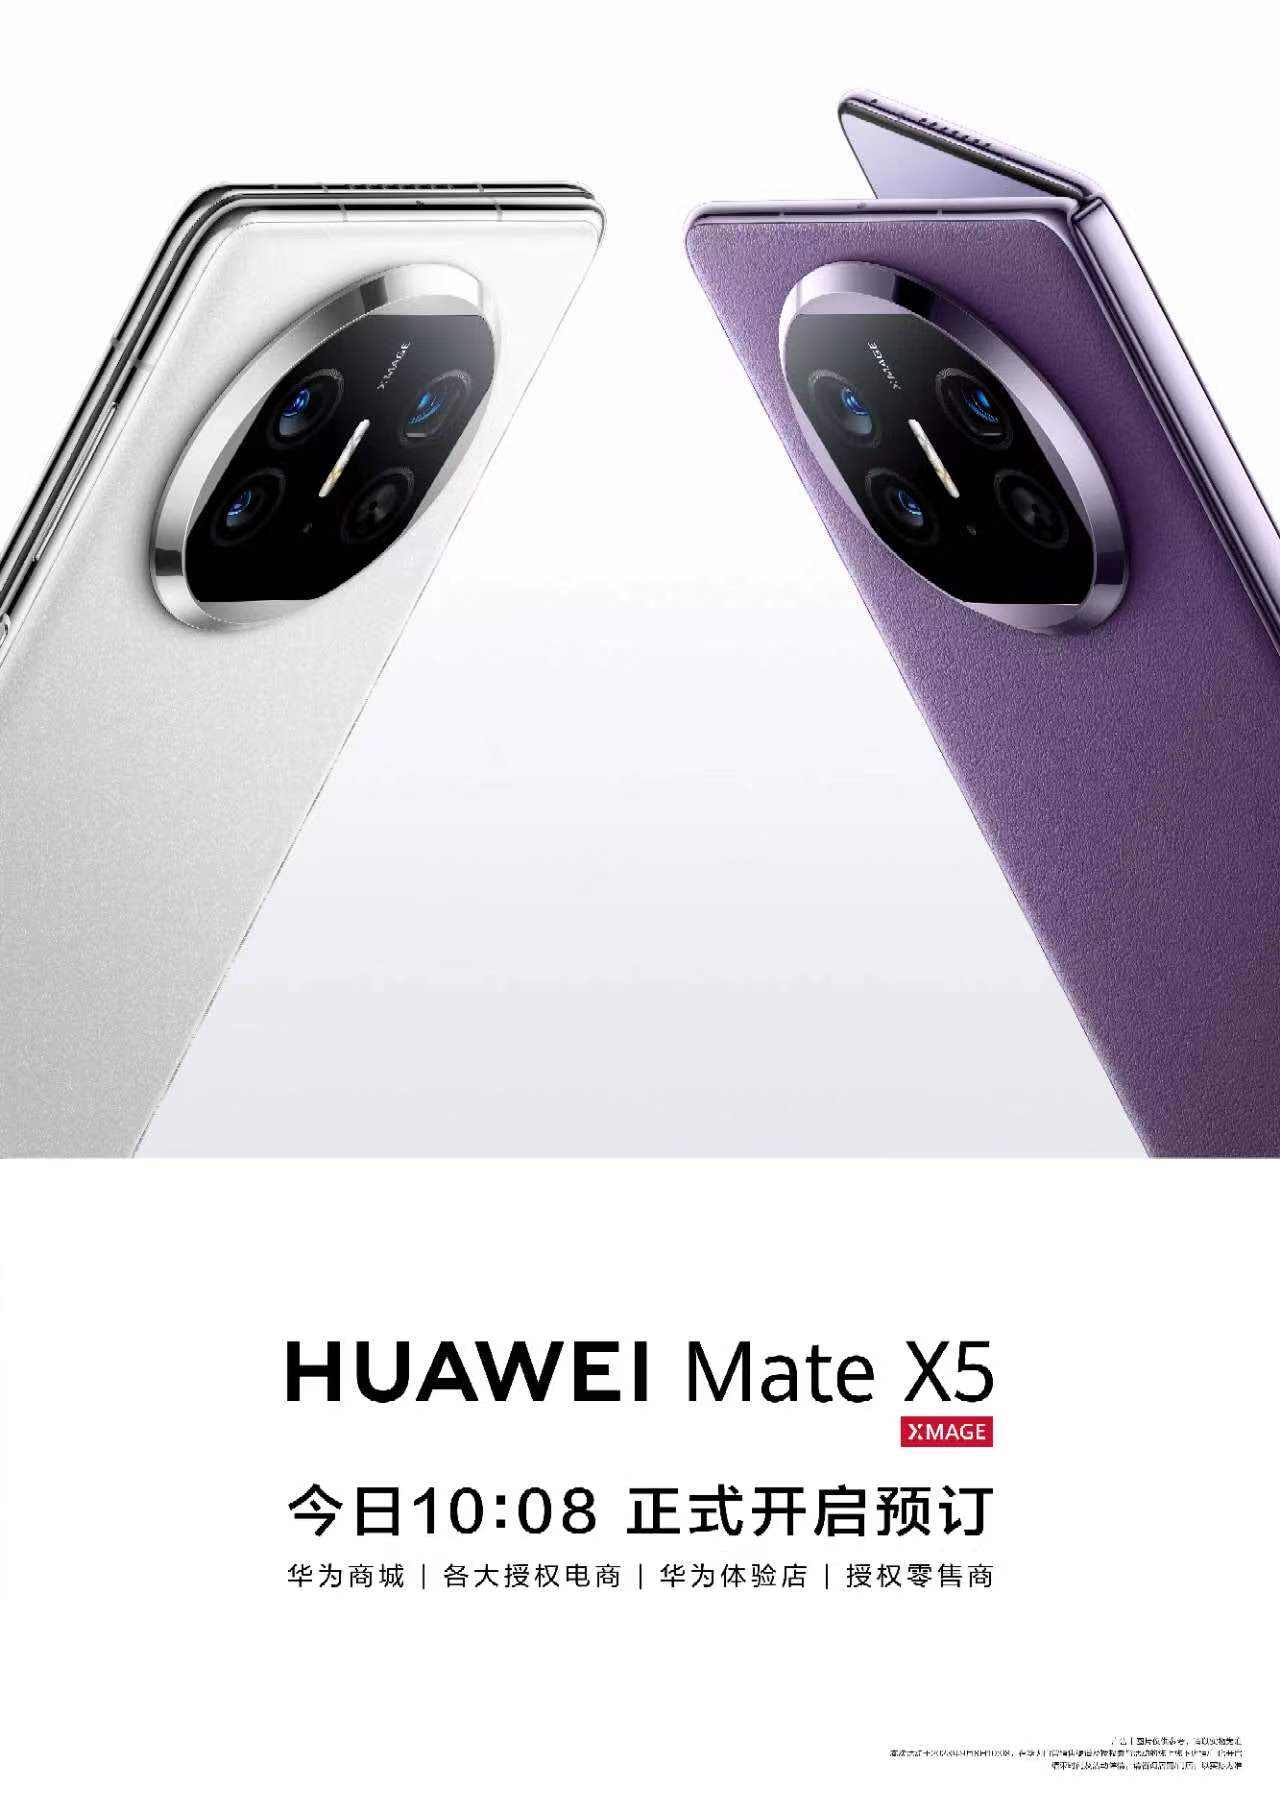 سعر ومواصفات هواوي ميت 60 برو - Huawei Mate 60 Pro عيوب و مميزات